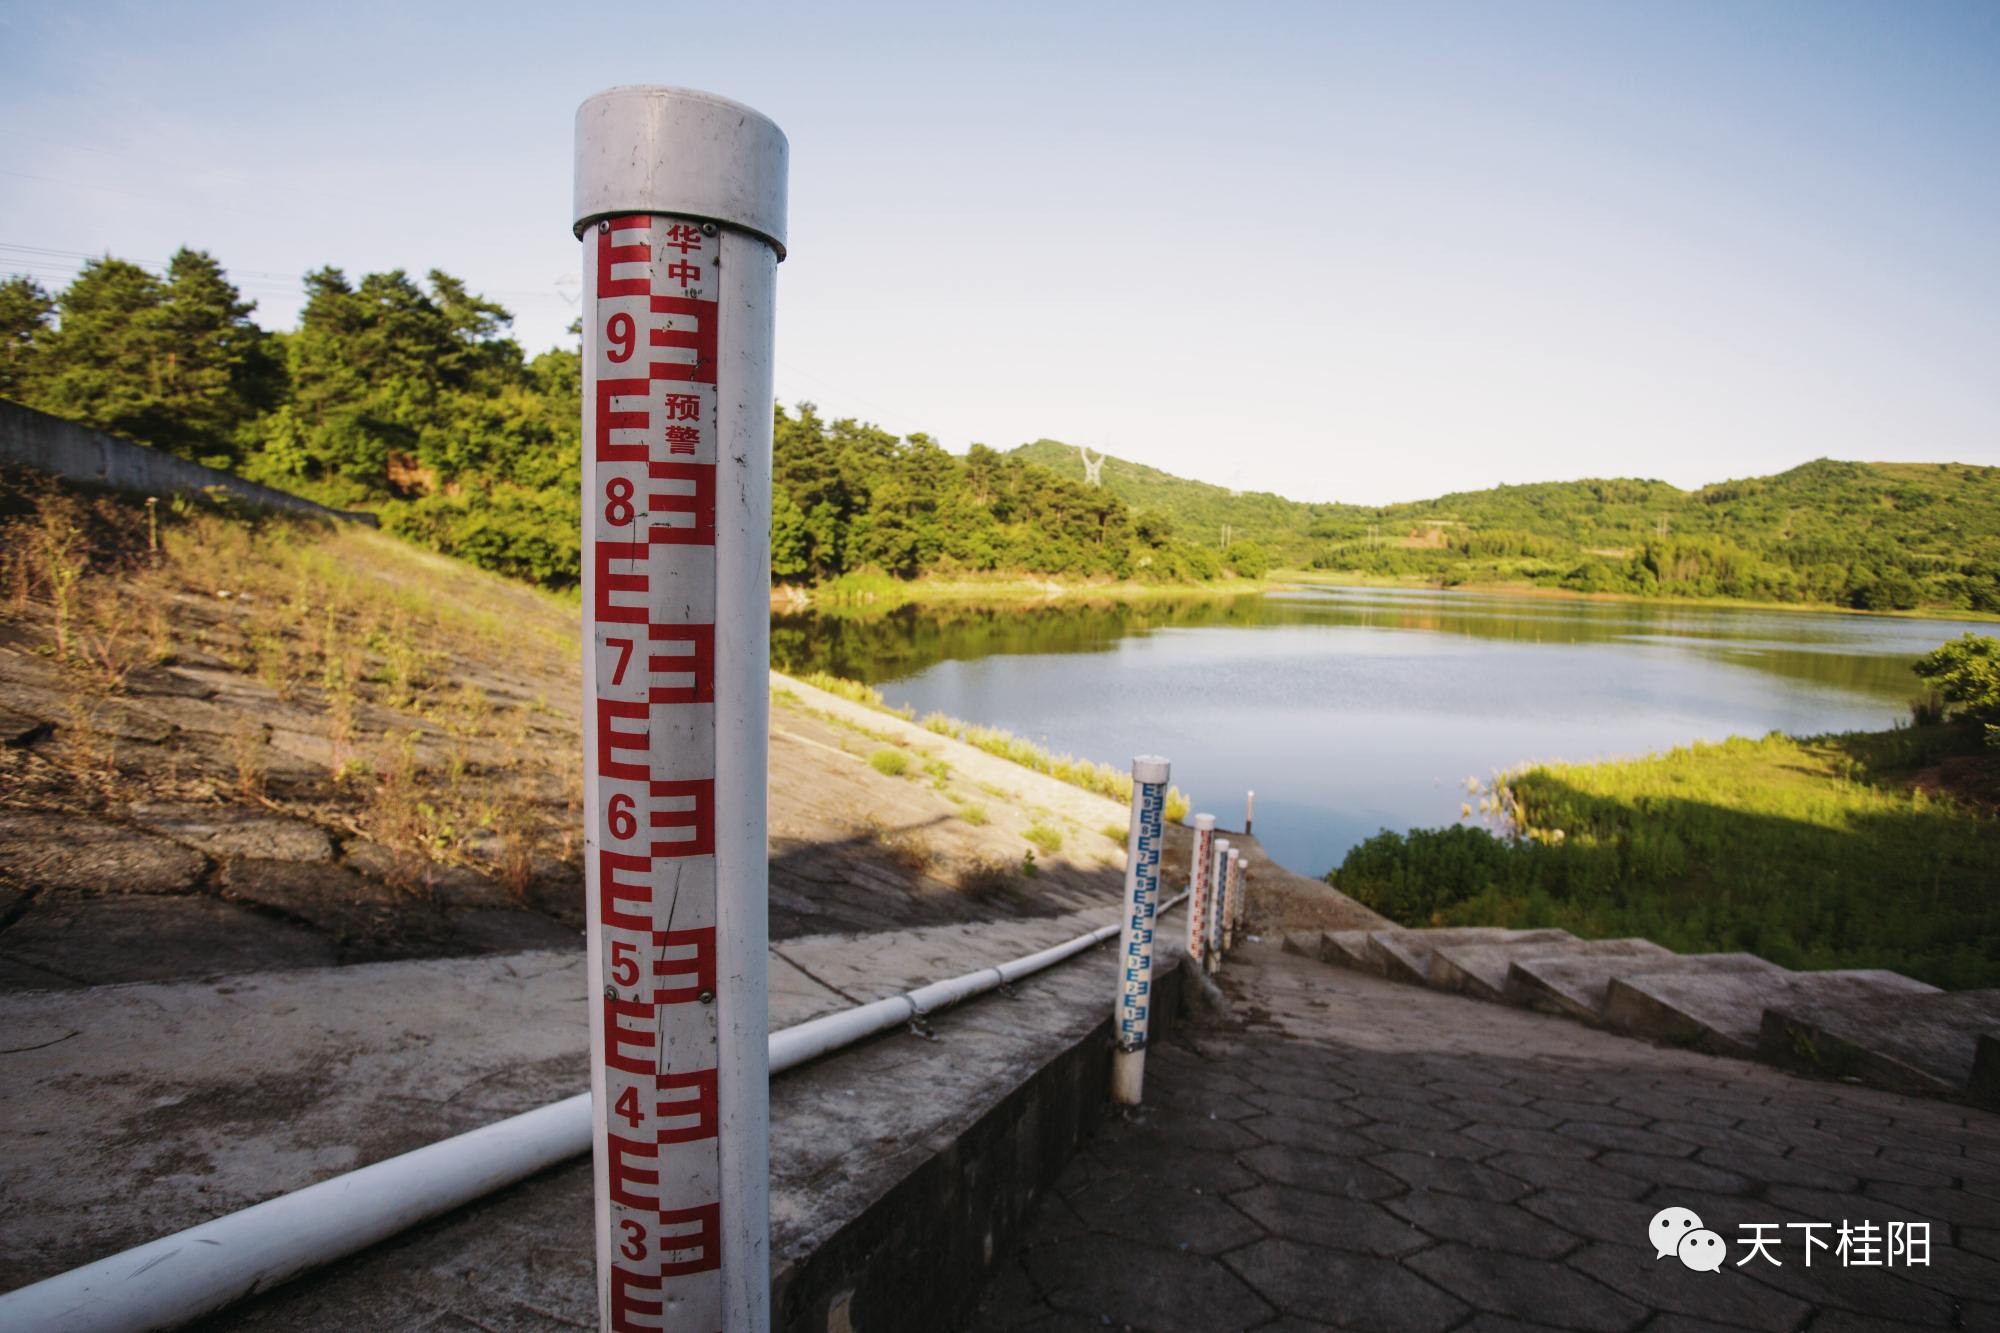 水位标尺不仅起到标示水位高度的作用,更重要的作用在于预警,当水位